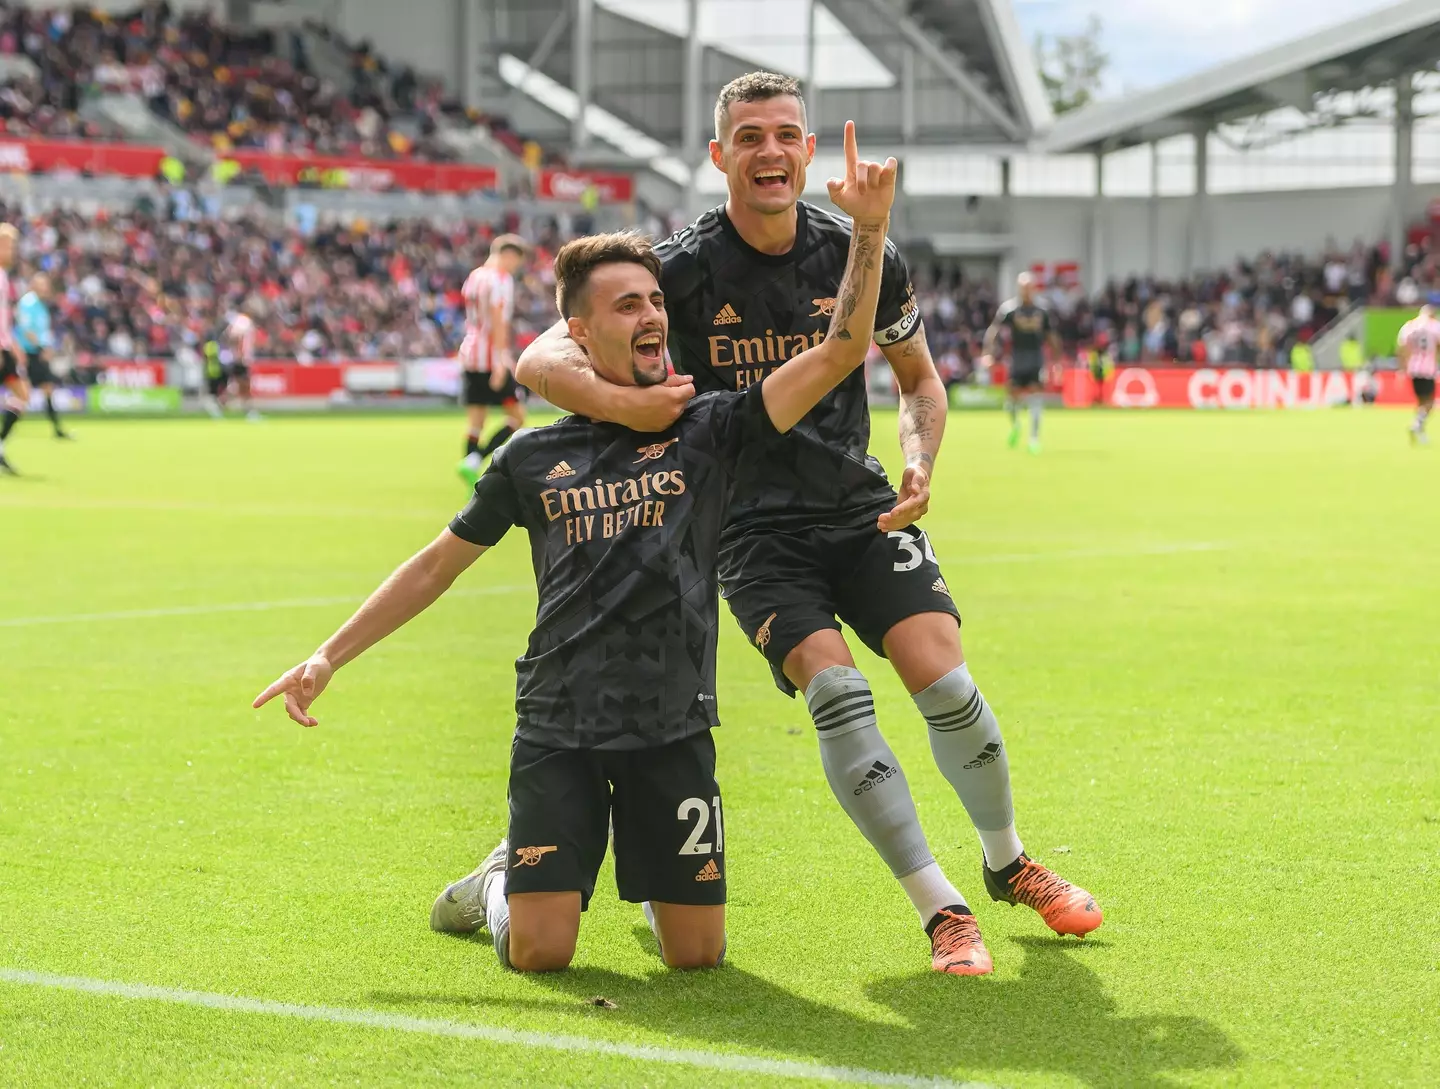 Vieira celebrates his goal at Brentford (Image: Alamy)